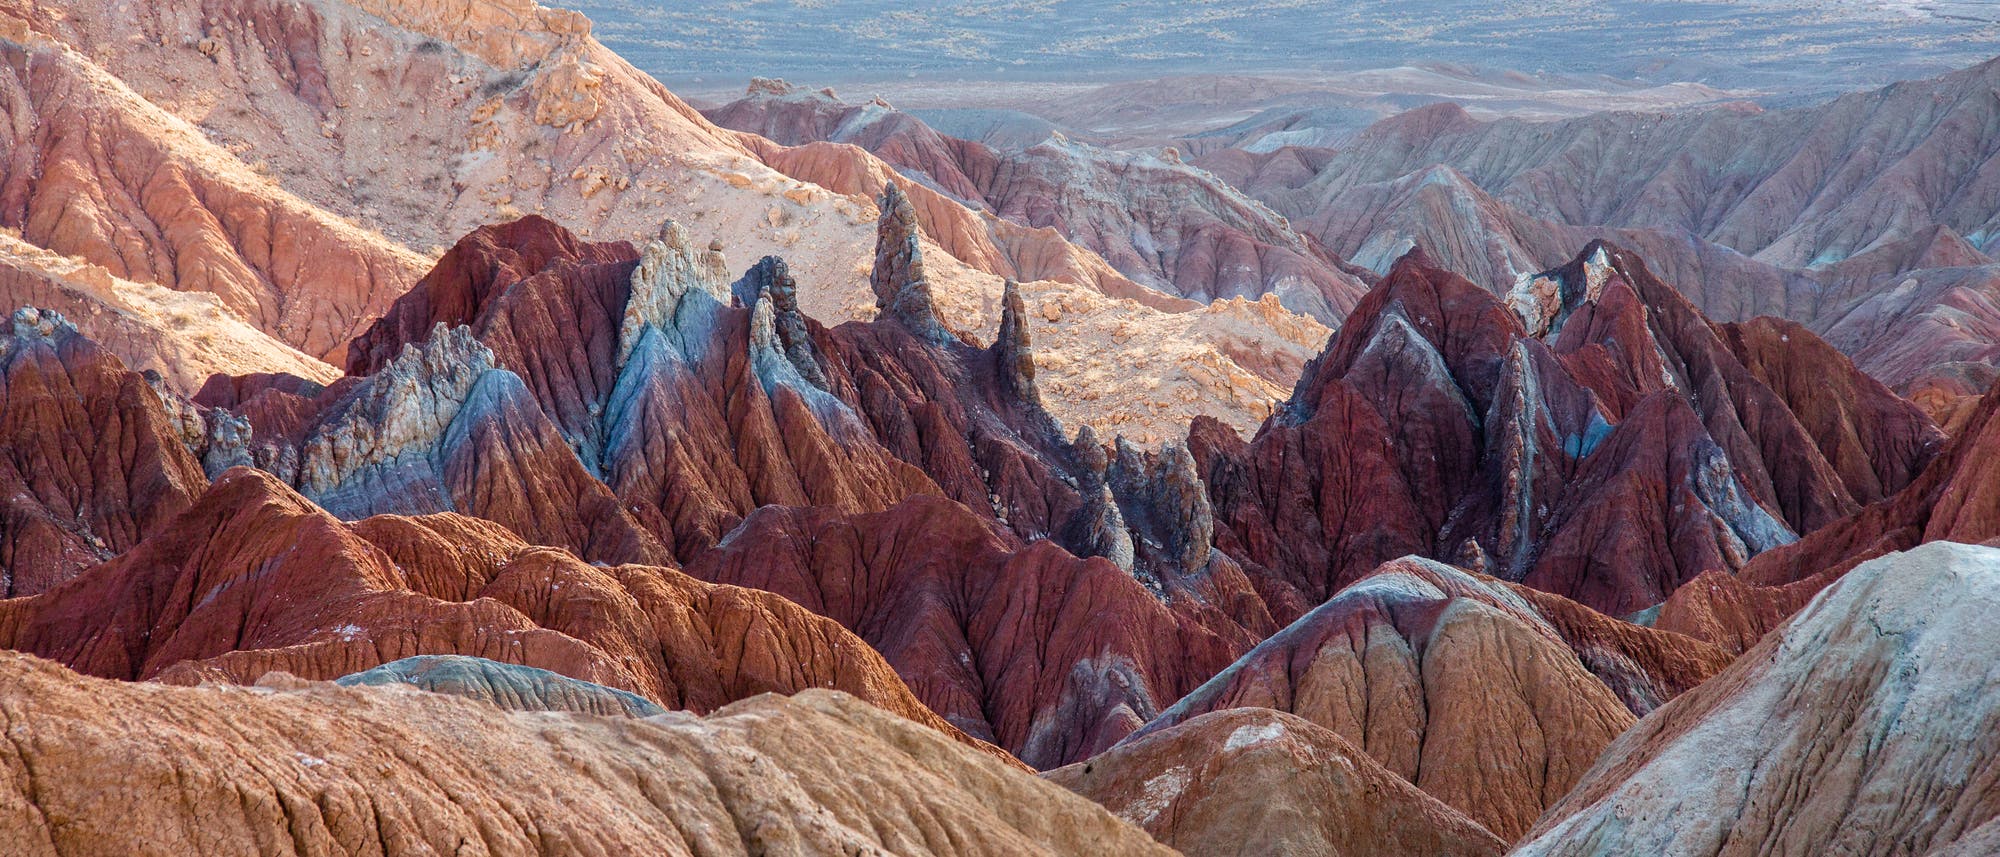 Berge in der Wüste Lut im Südwesten des Iran.